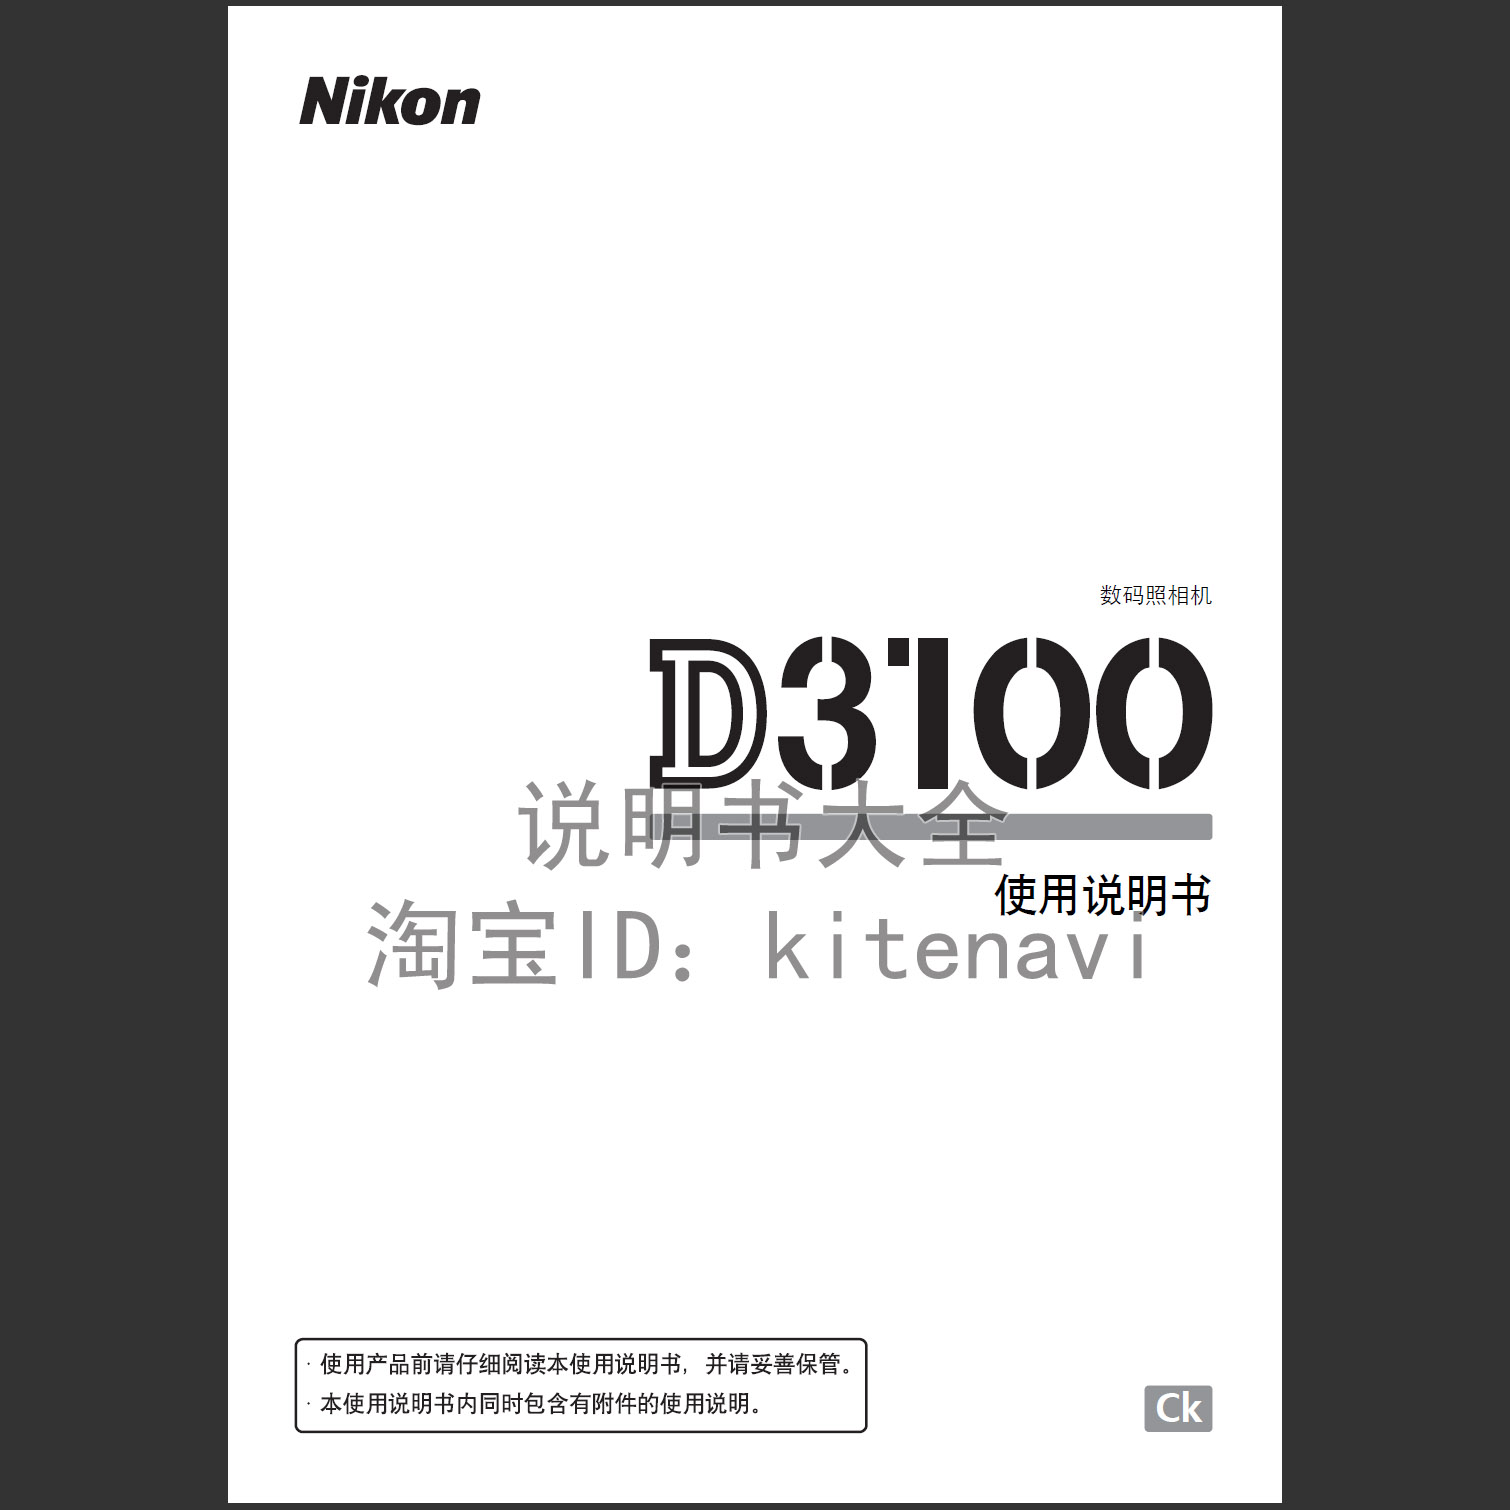 [超清晰,无水印,pdf]尼康 Nikon D3100 简体中文